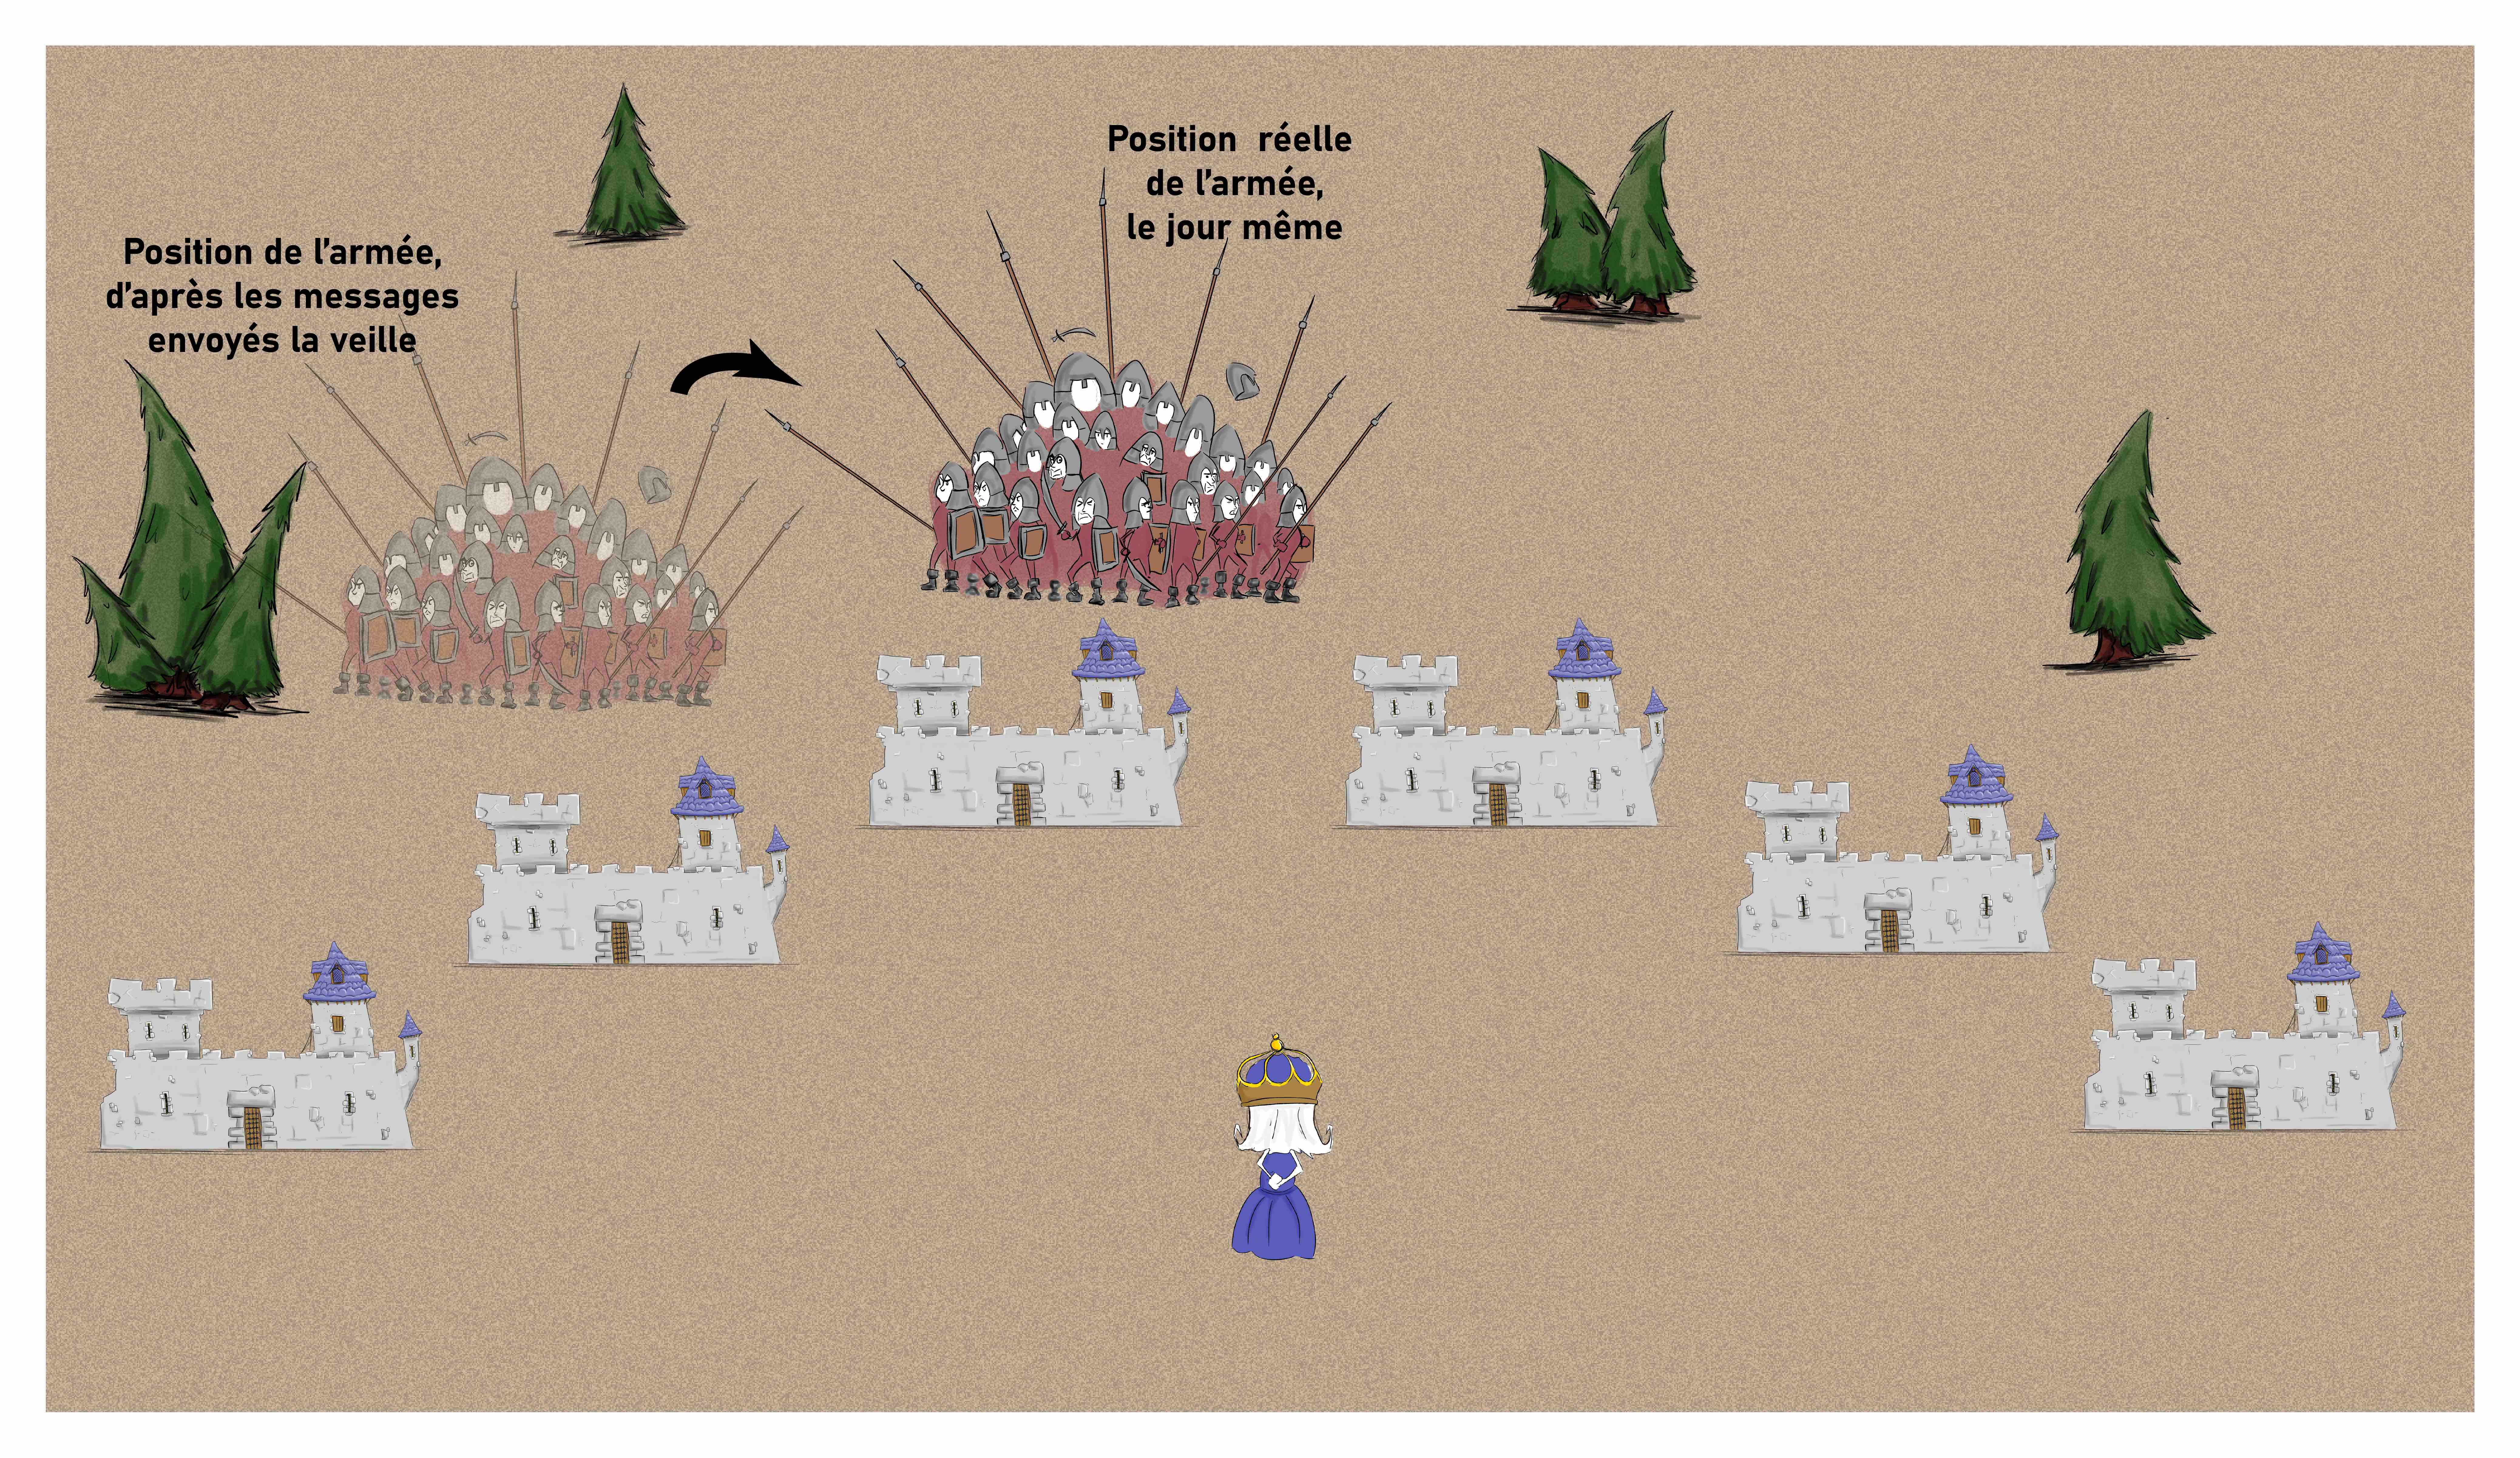 La reine est devant ses 6 châteaux. L'armée est entre les châteaux 3 et 4 le jour même. Une armée transparente montre la position de l'armée la veille, entre les châteaux 1 et 2. 